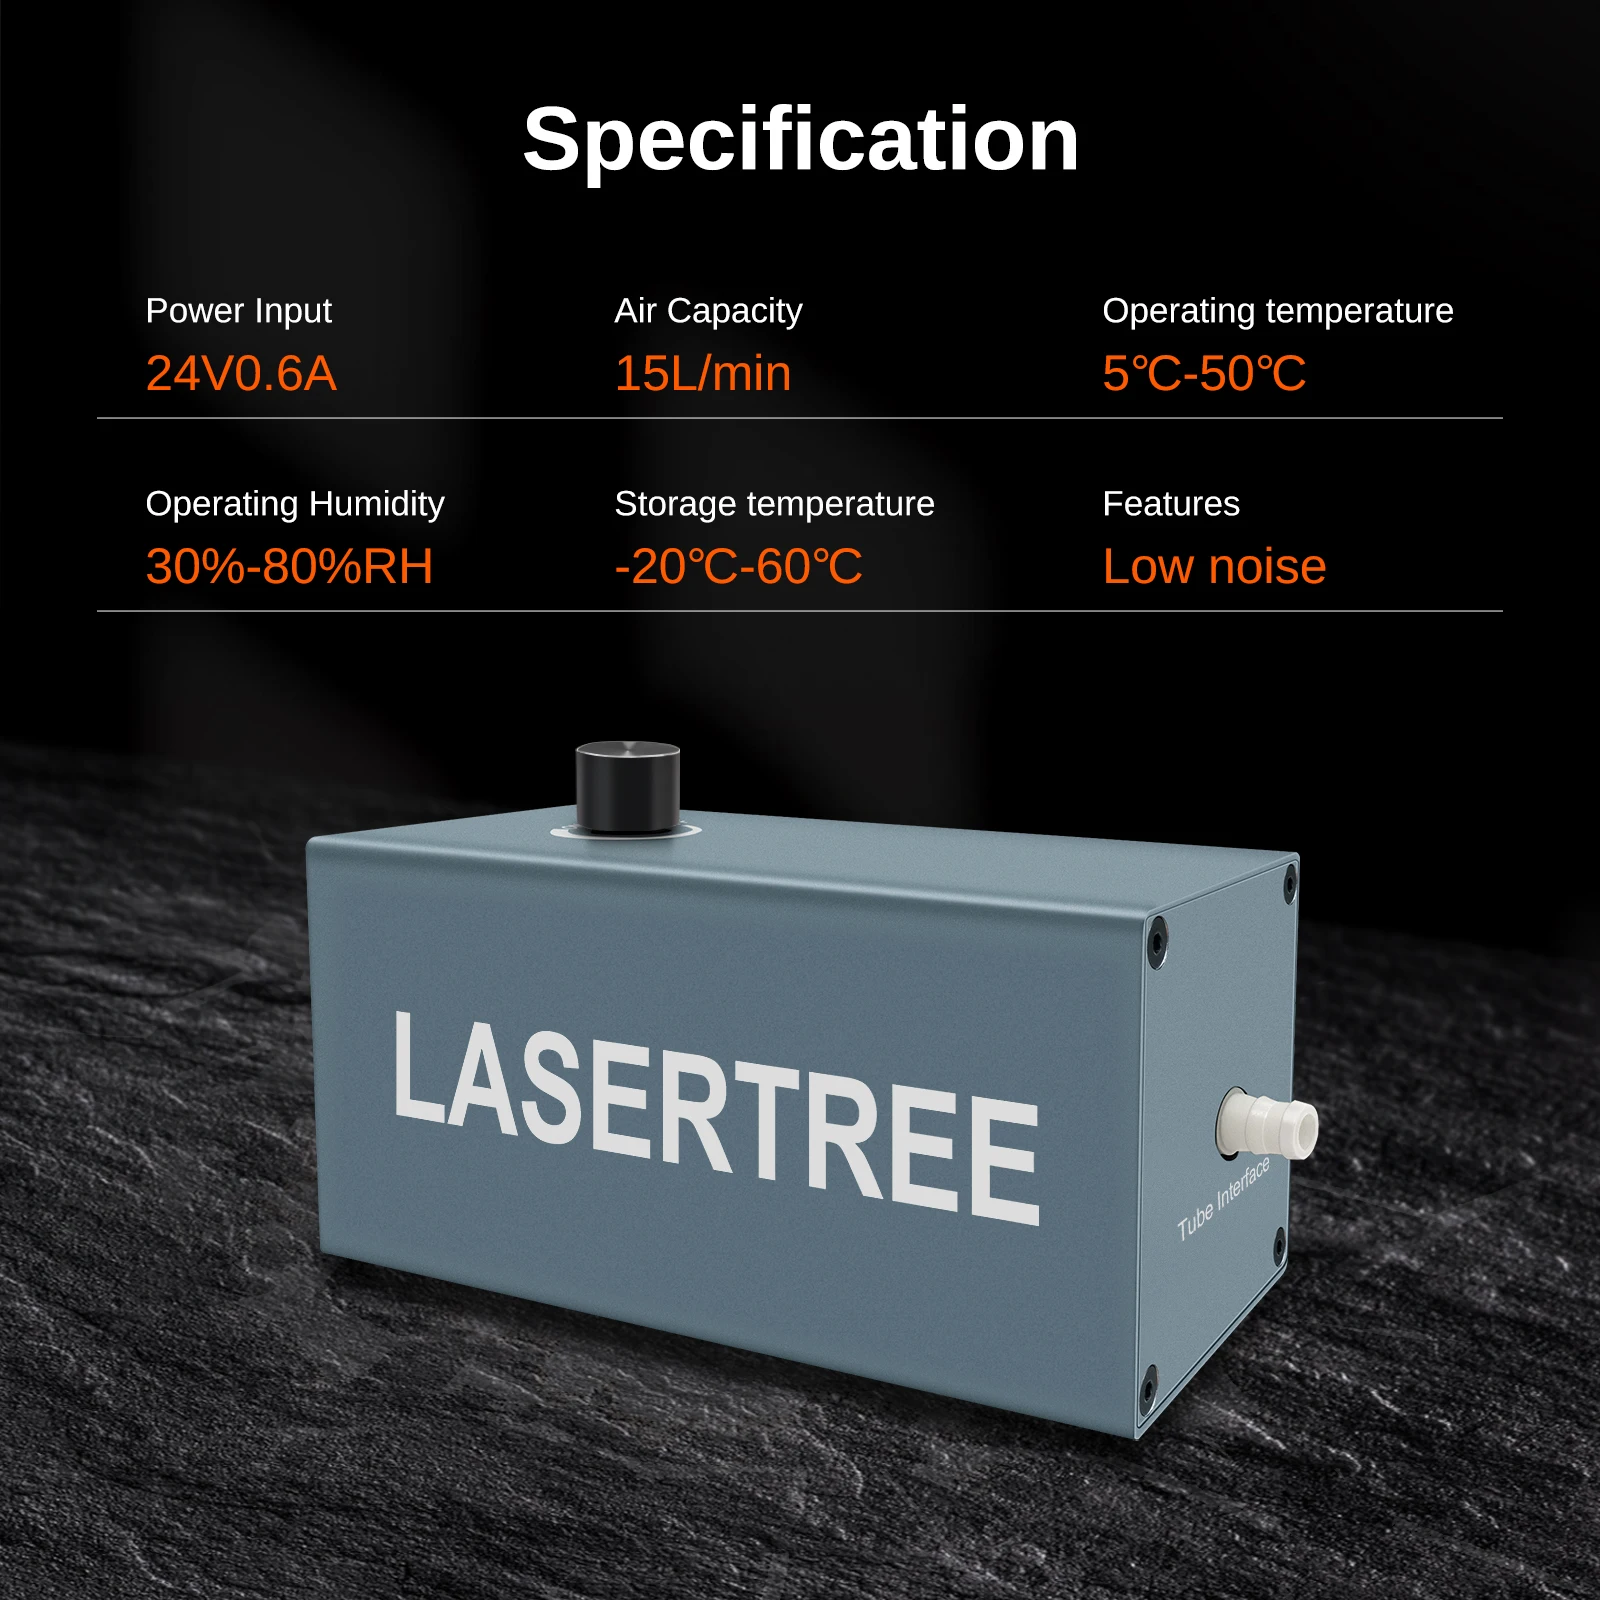 LASER Lanka E 15L/min-Pompe à Air Laser à Faible Bruit, Compresseur d'Aide pour Graveur Laser, Technologie Laser, Outils pour le Bois